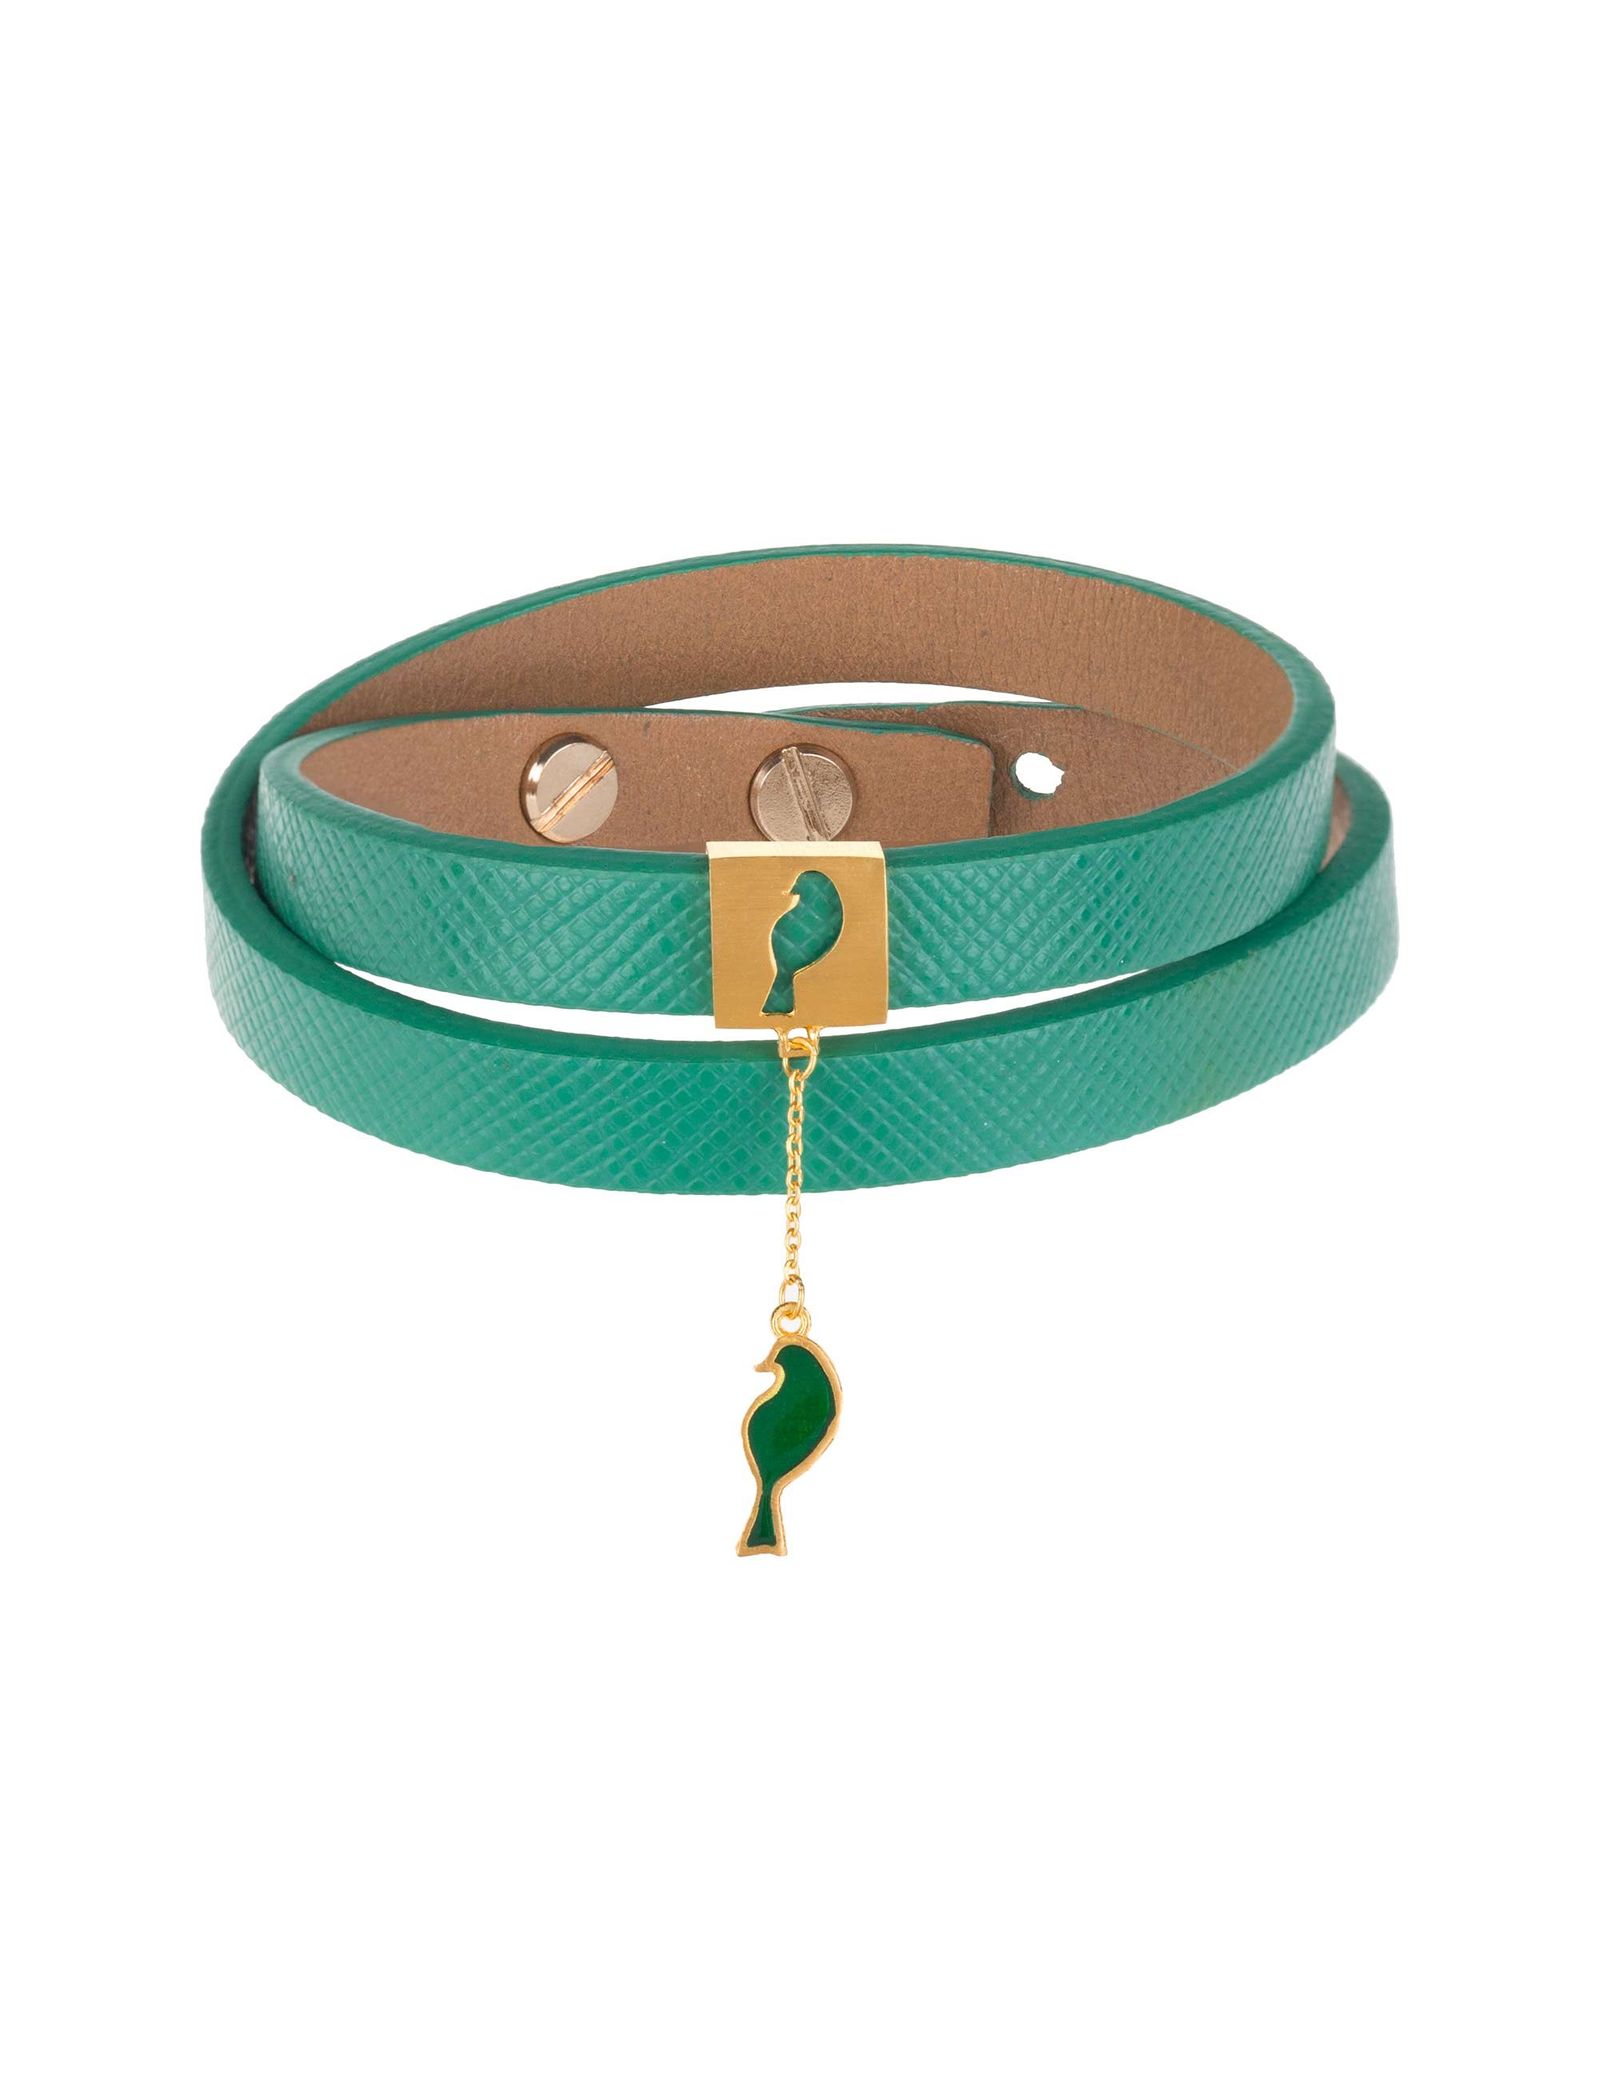 دستبند طلا زنانه - درسا - سبز - 1